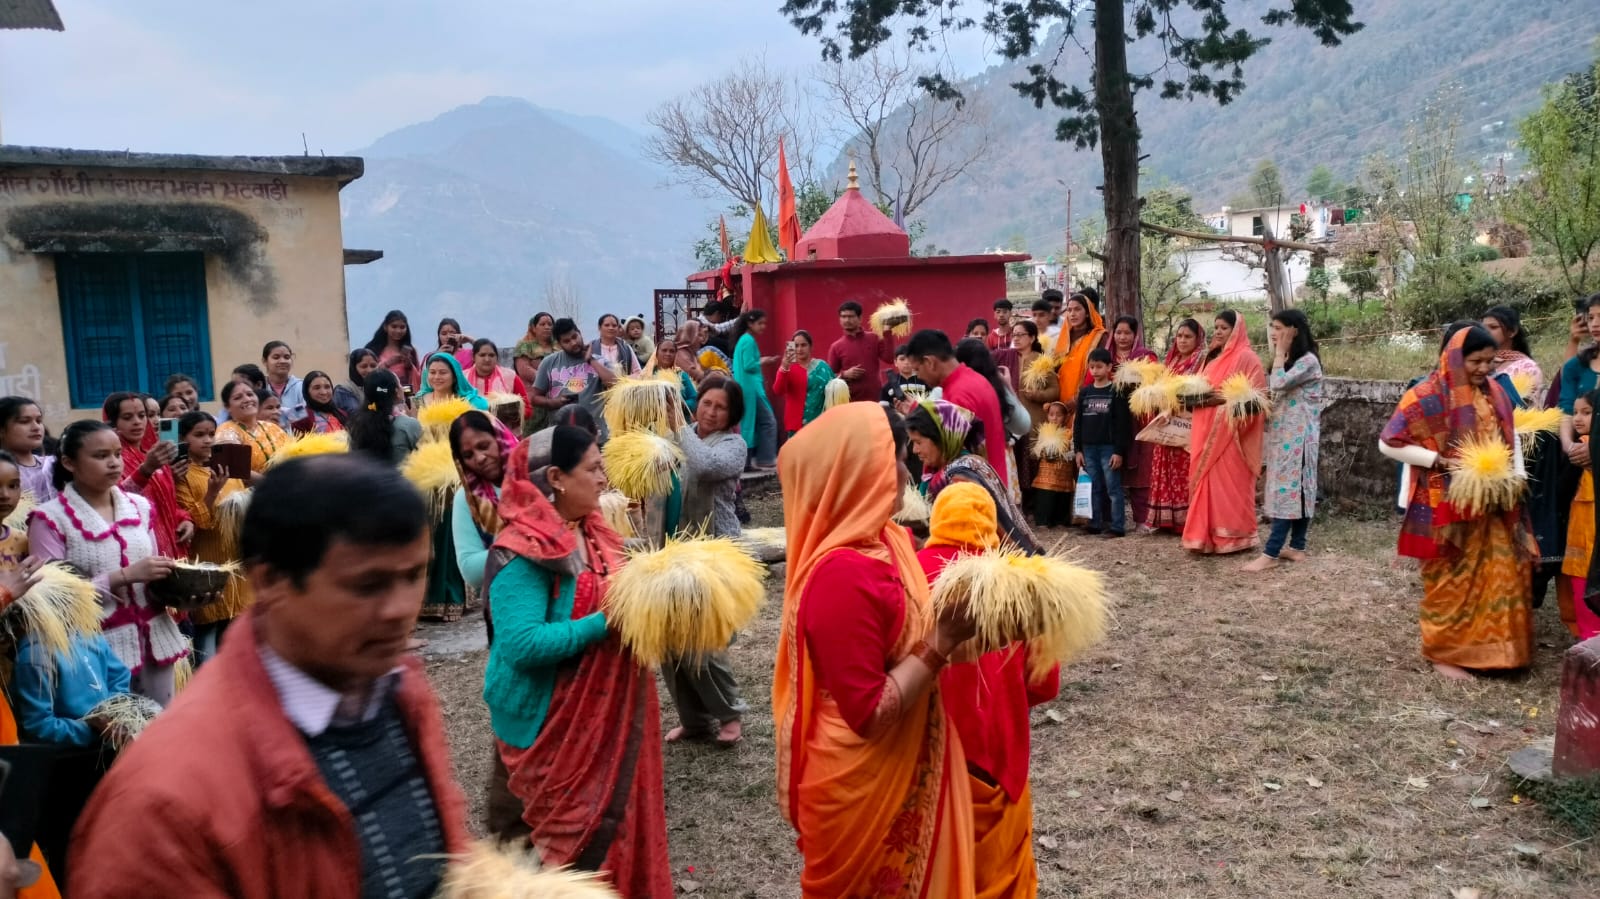 ऊखीमठ क्षेत्र की केदार घाटी में माता हरियाली त्यौहार धूमधाम से संपन्न